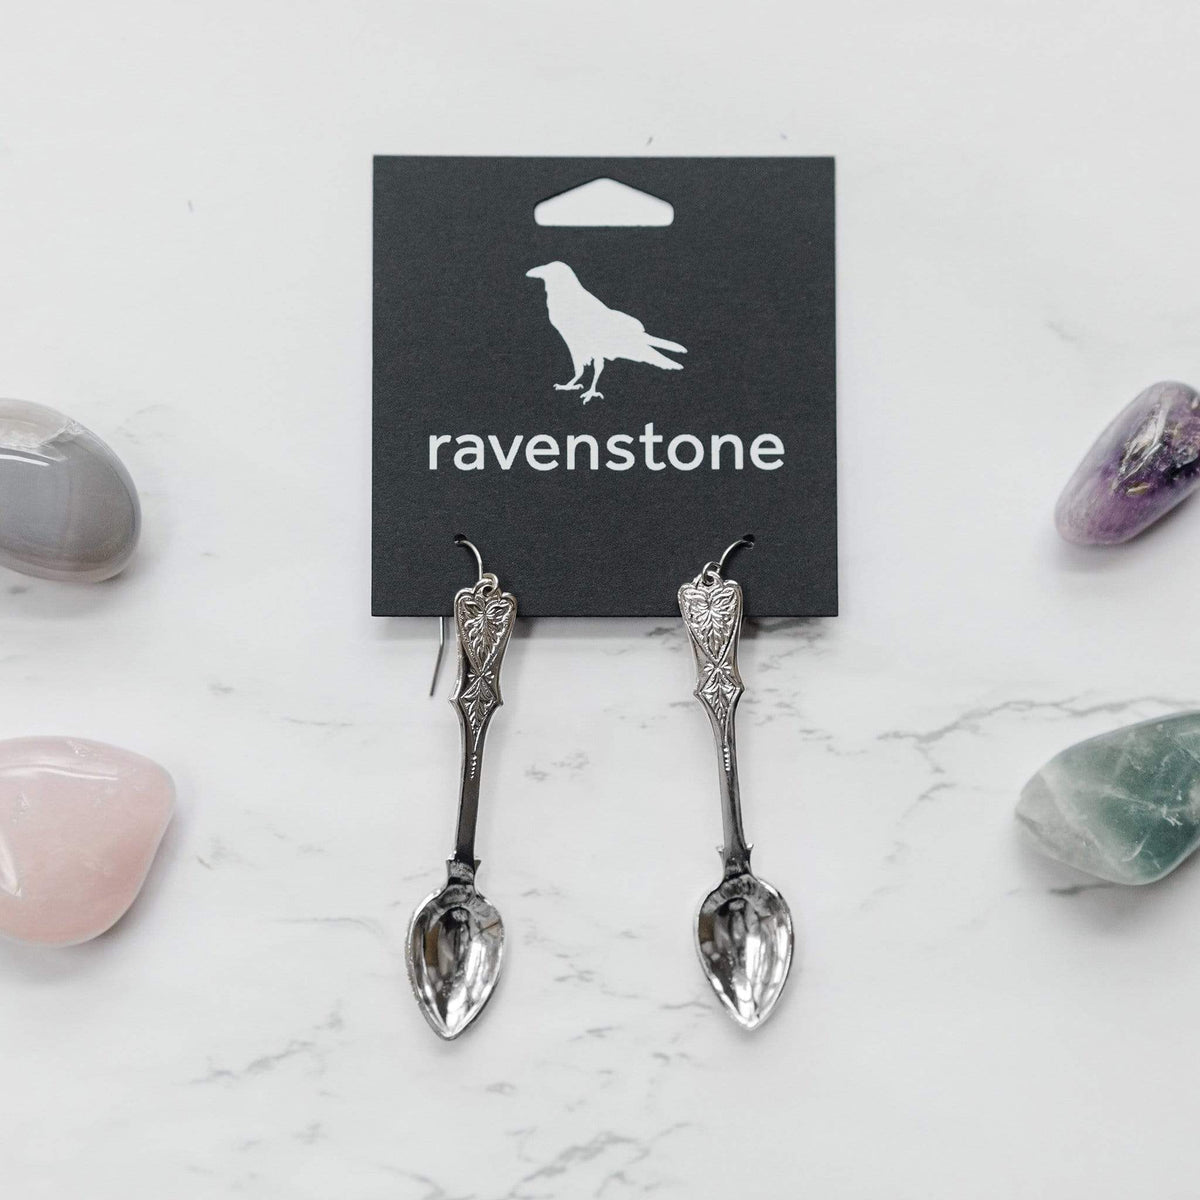 ravenstone The Silver Spoon Earrings